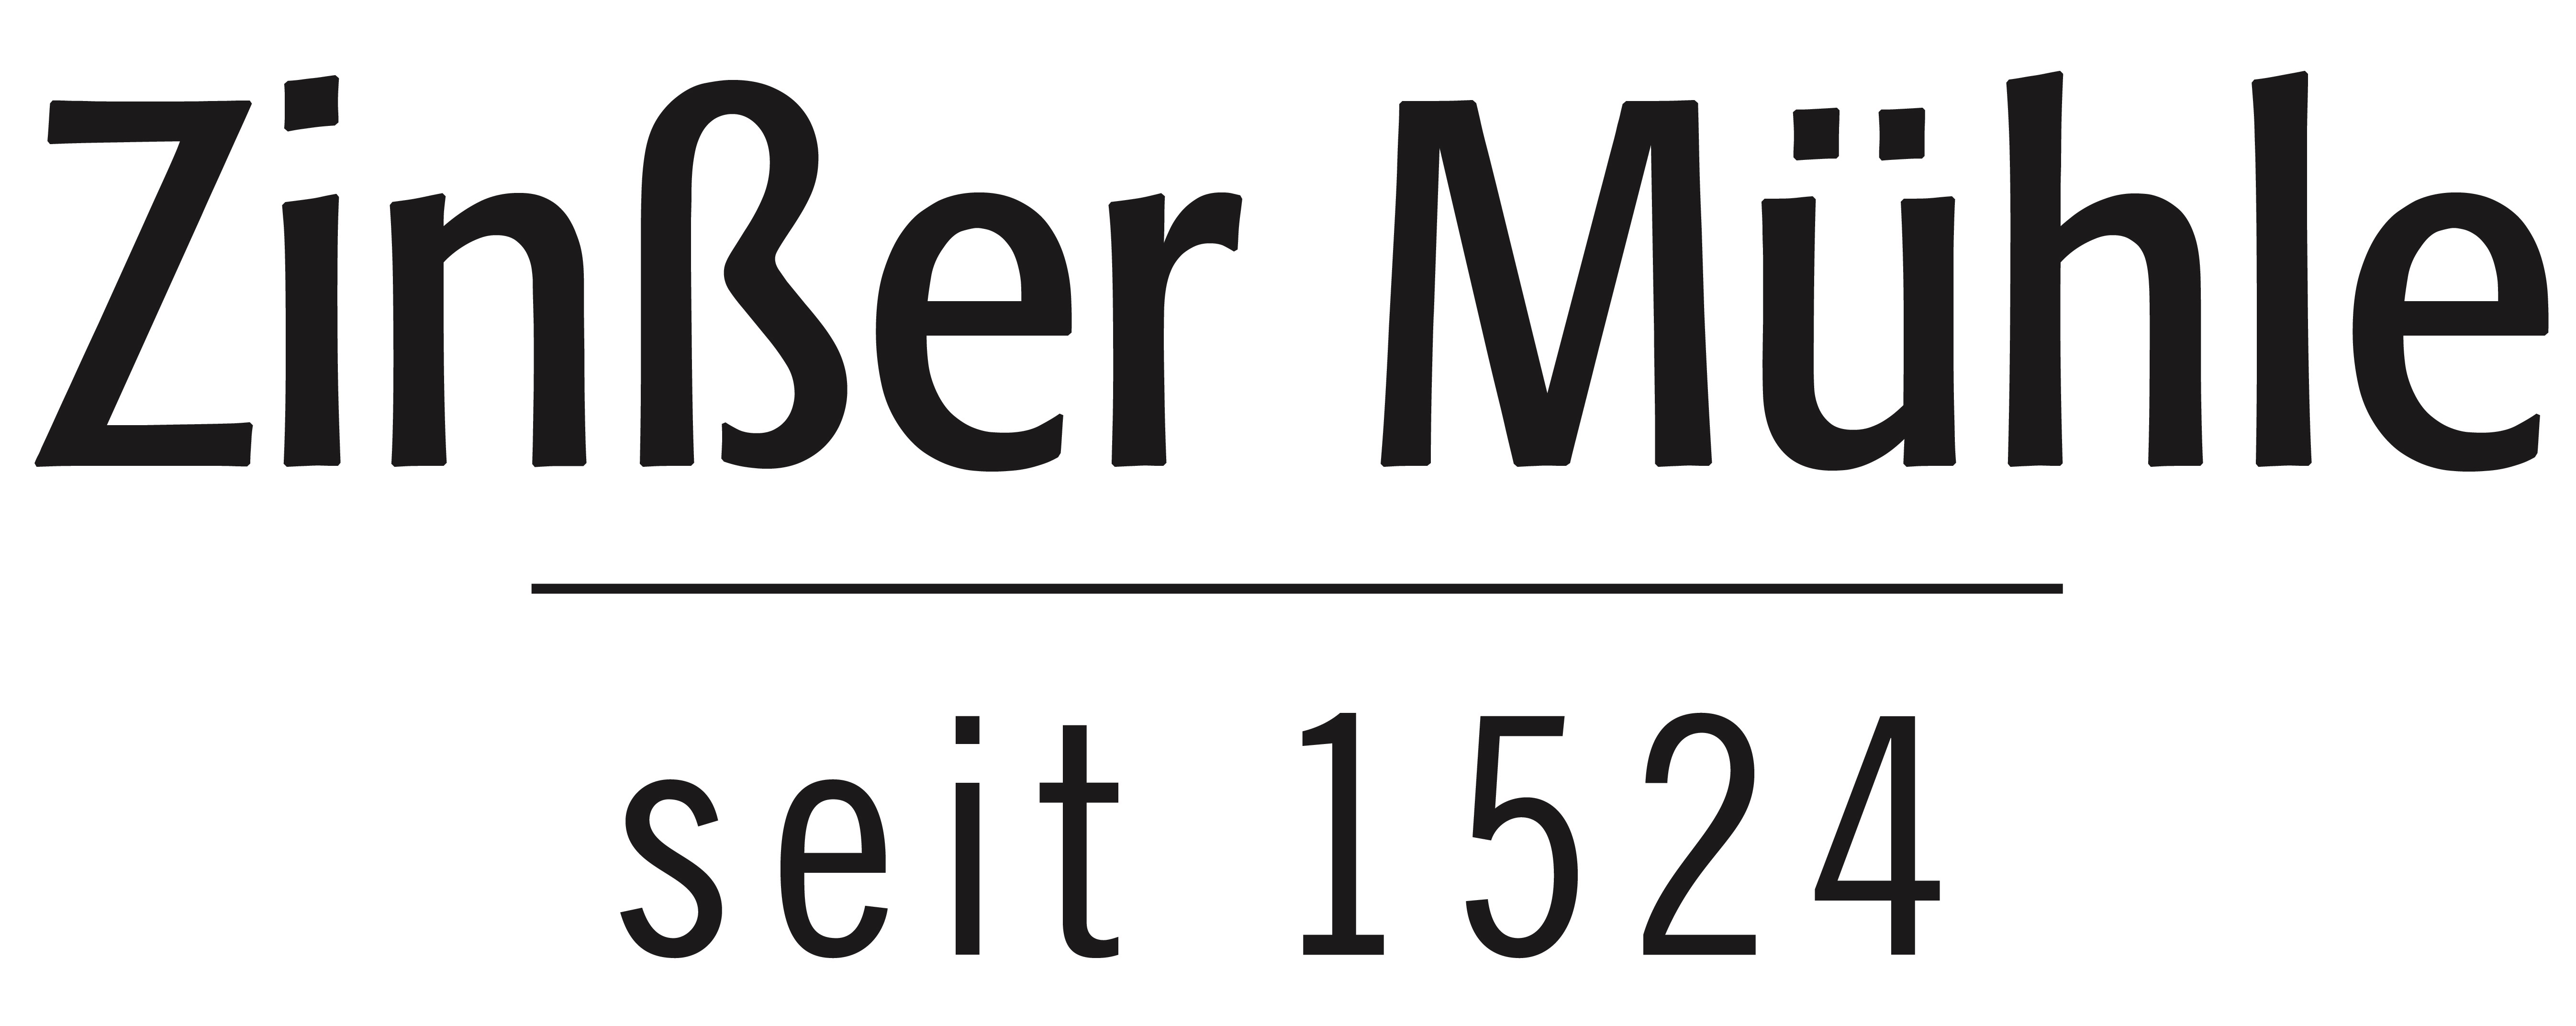 Zinßer Mühle seit 1524 logo